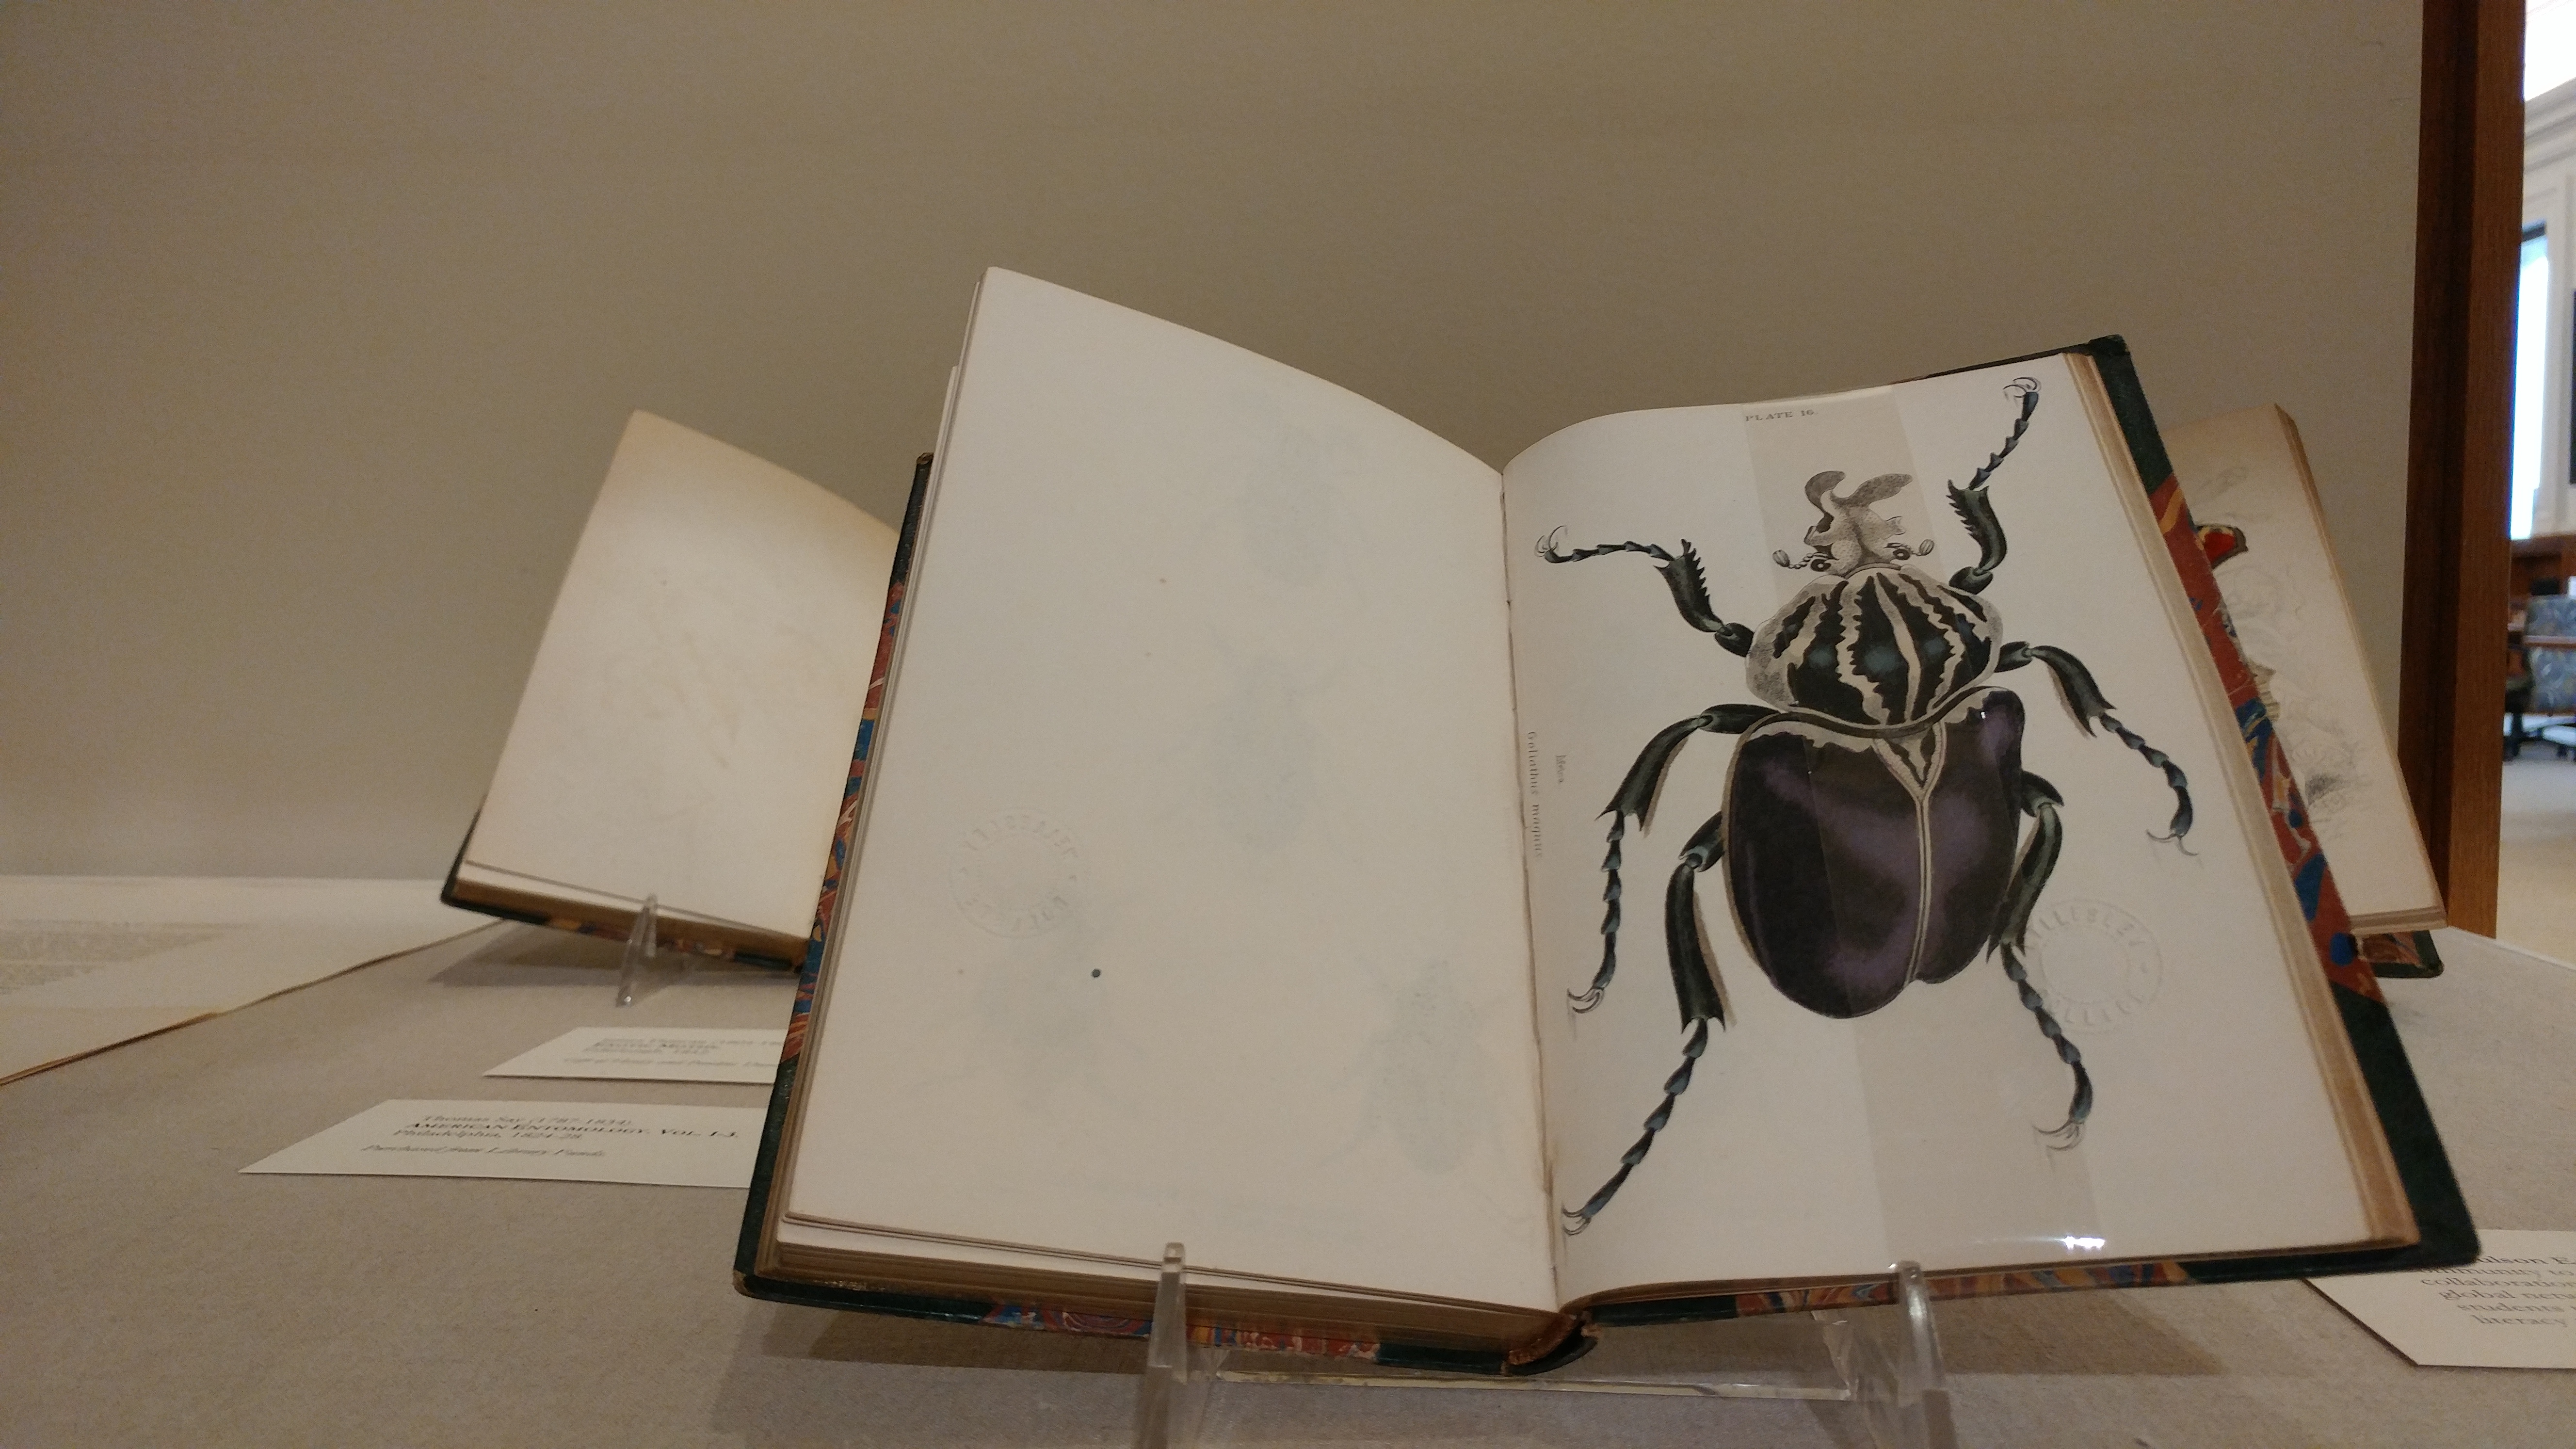 beetle illustration